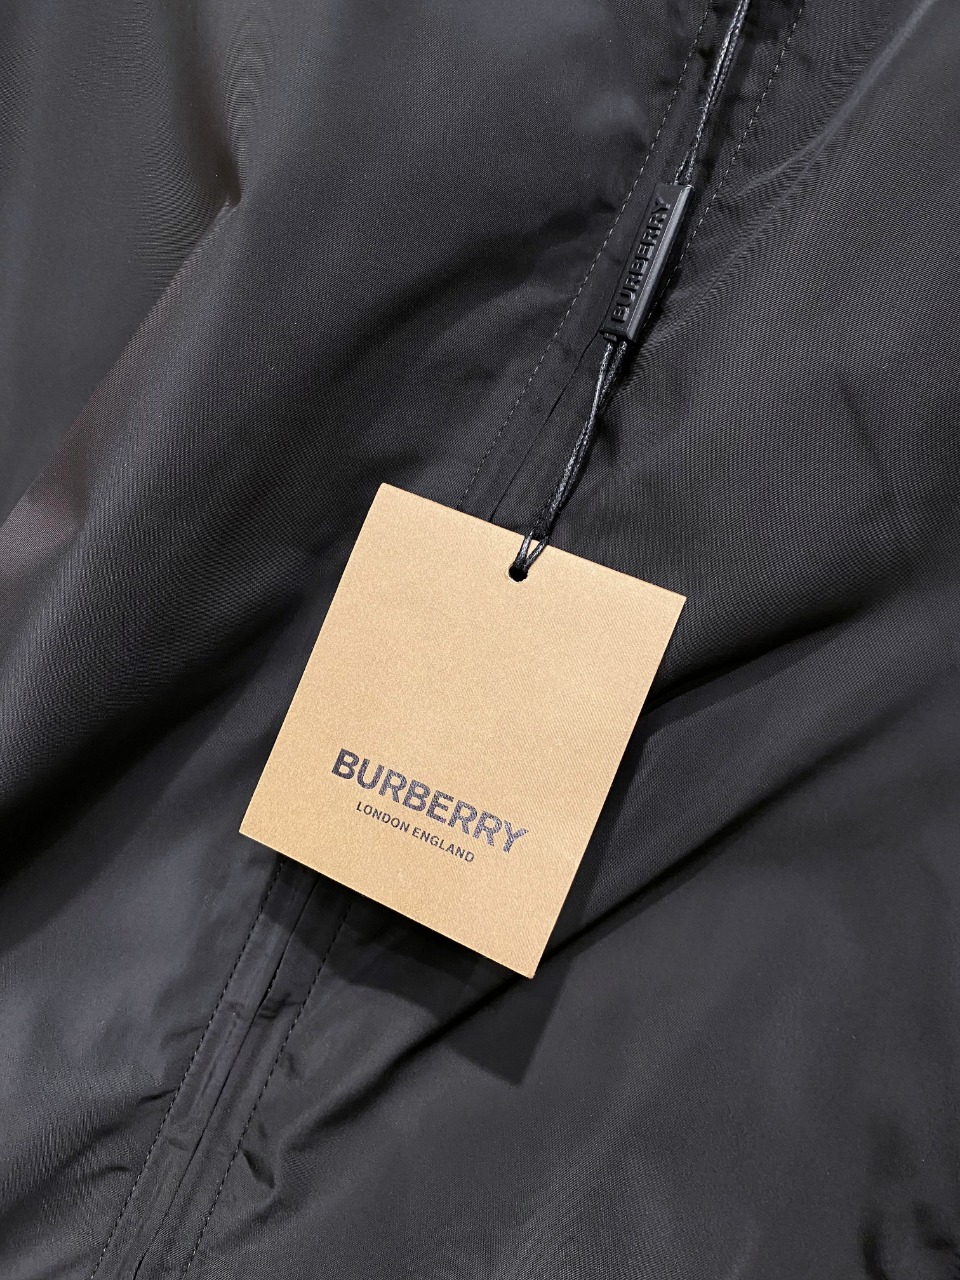 新款BBR连帽夹克外套原版一致的裁剪穿搭随意切换风格简单又时髦！高端定制复合布面料手感比以往做的要柔软的